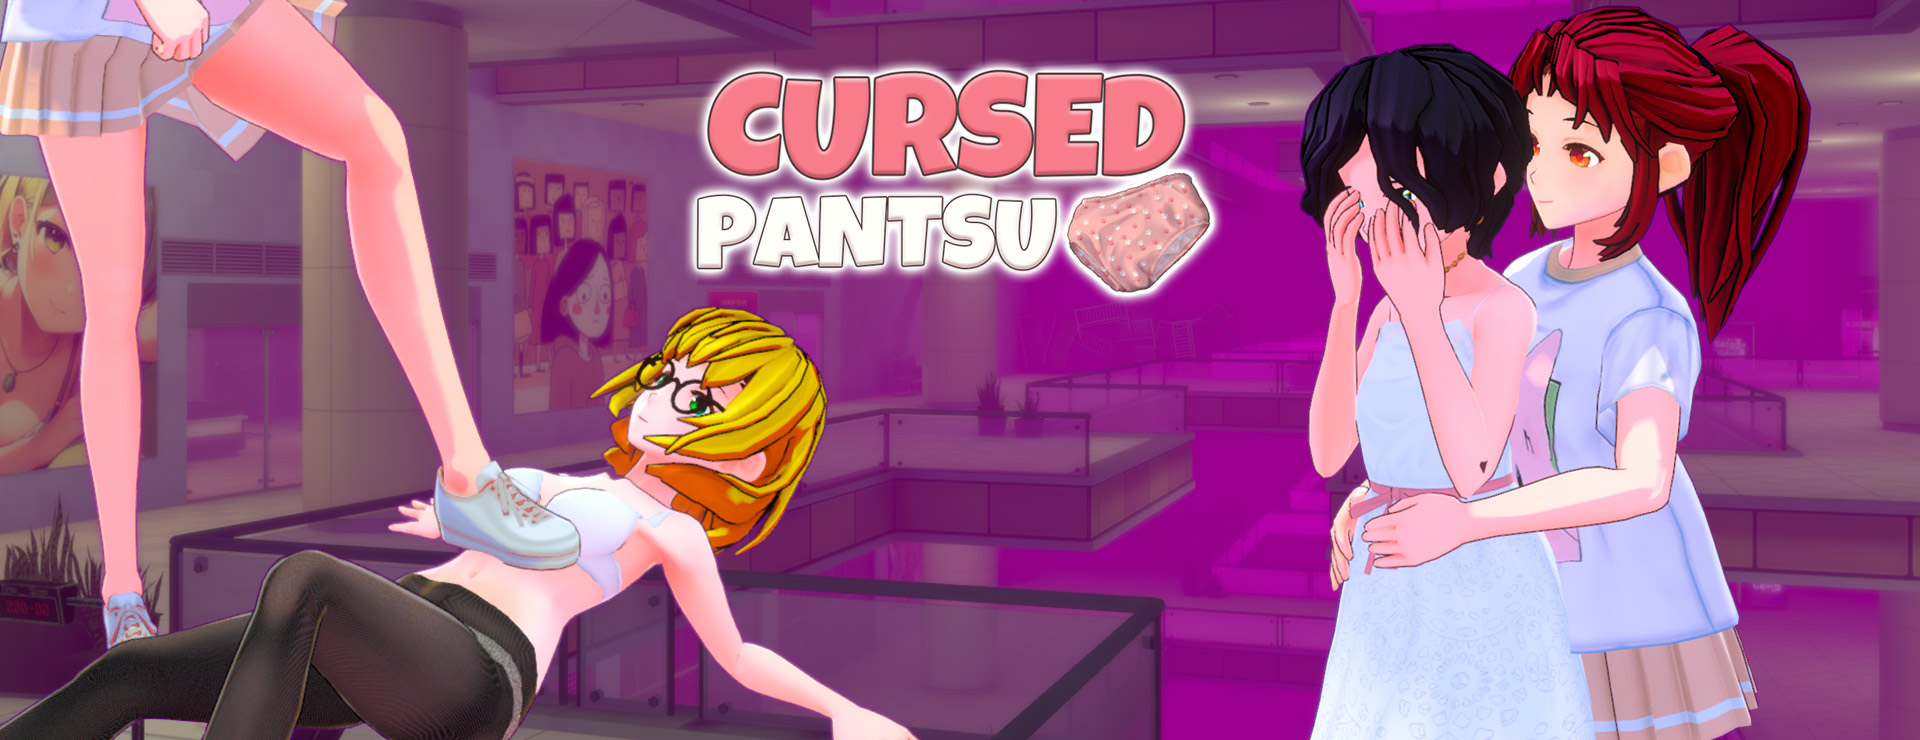 Cursed Pantsu - Action Adventure Spiel